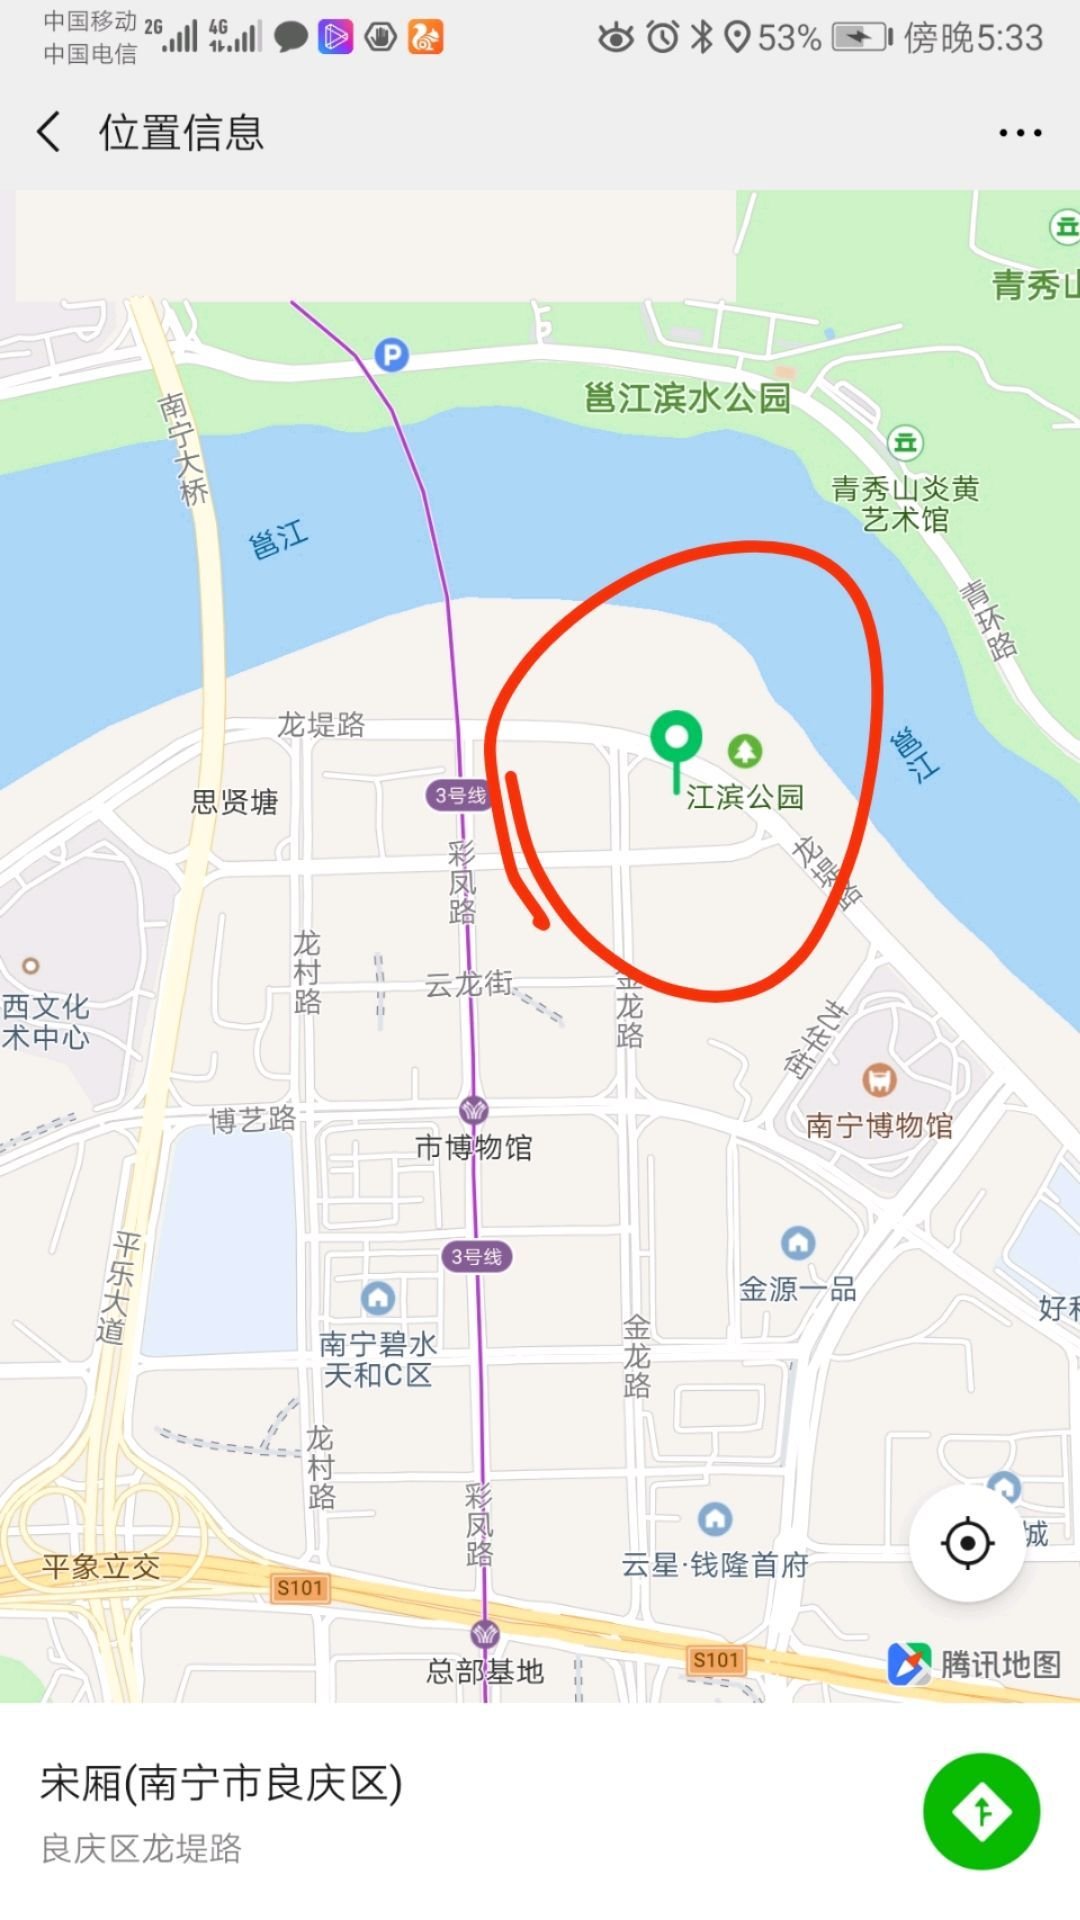 南宁五象新区 江景地块 转让产权证明